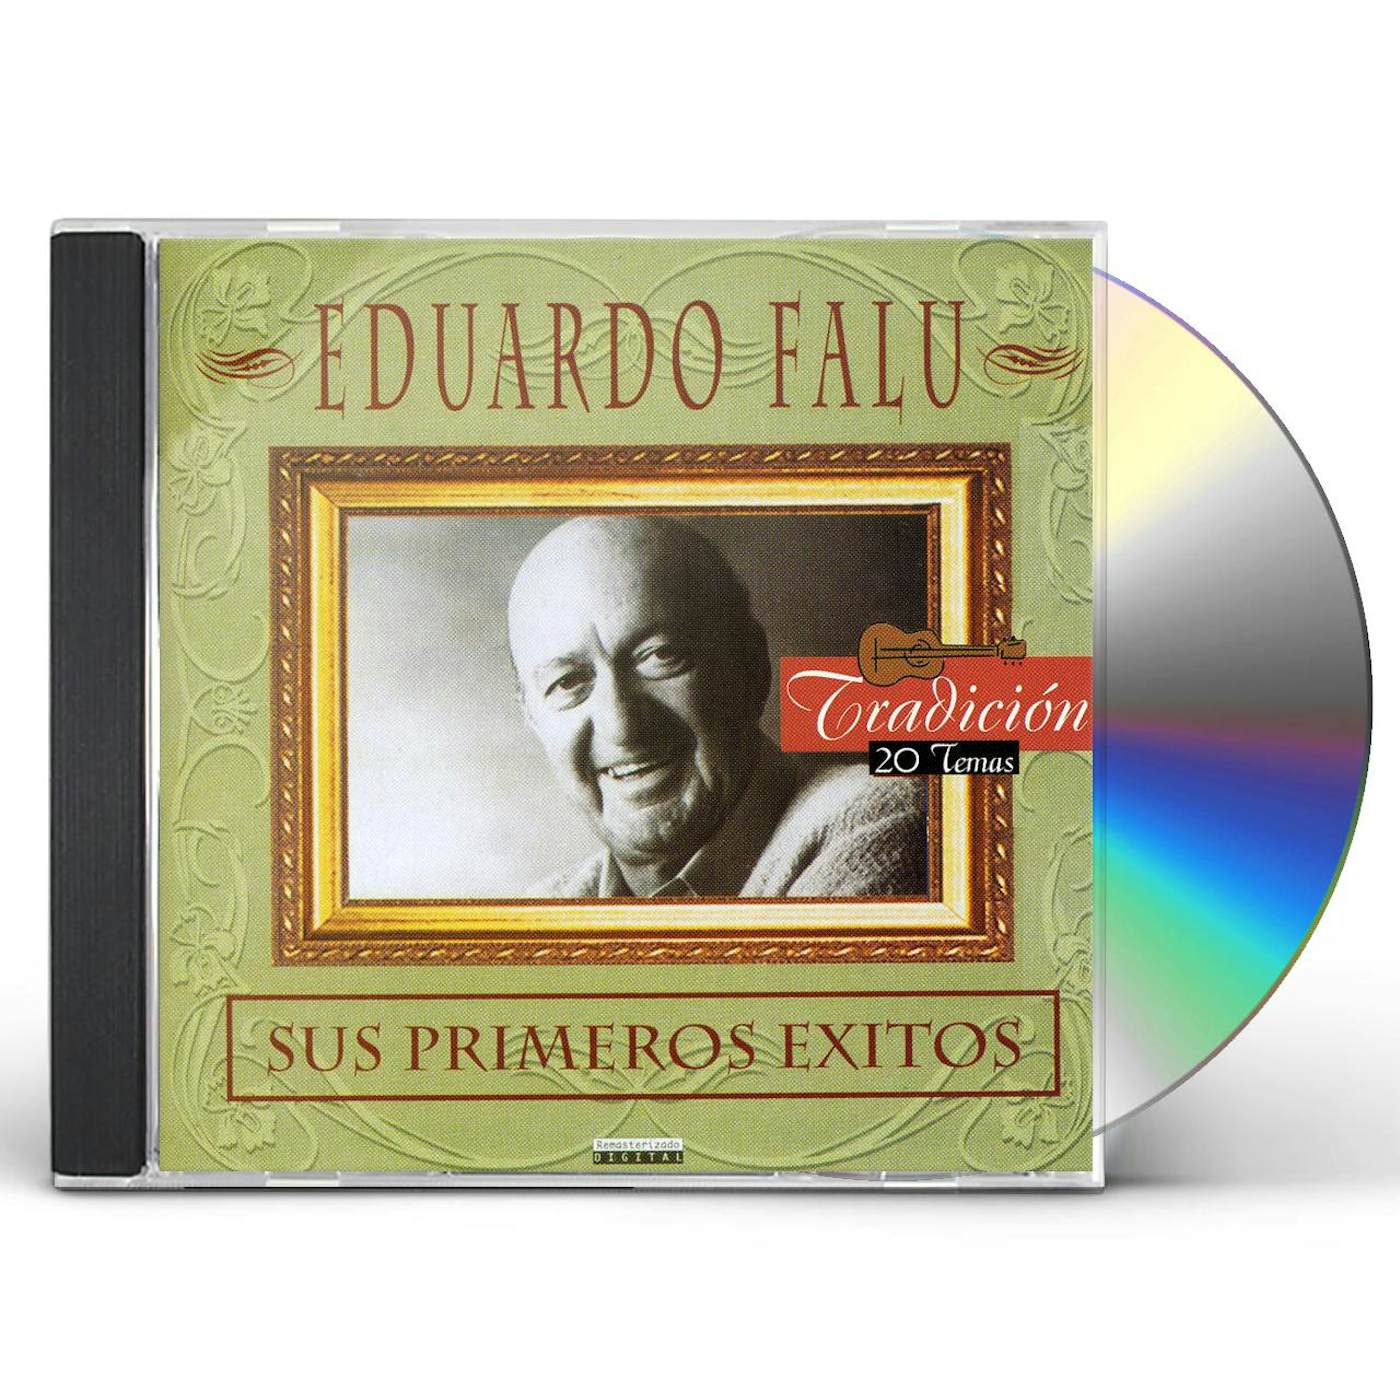 Eduardo Falú SUS PRIMEROS EXITOS CD